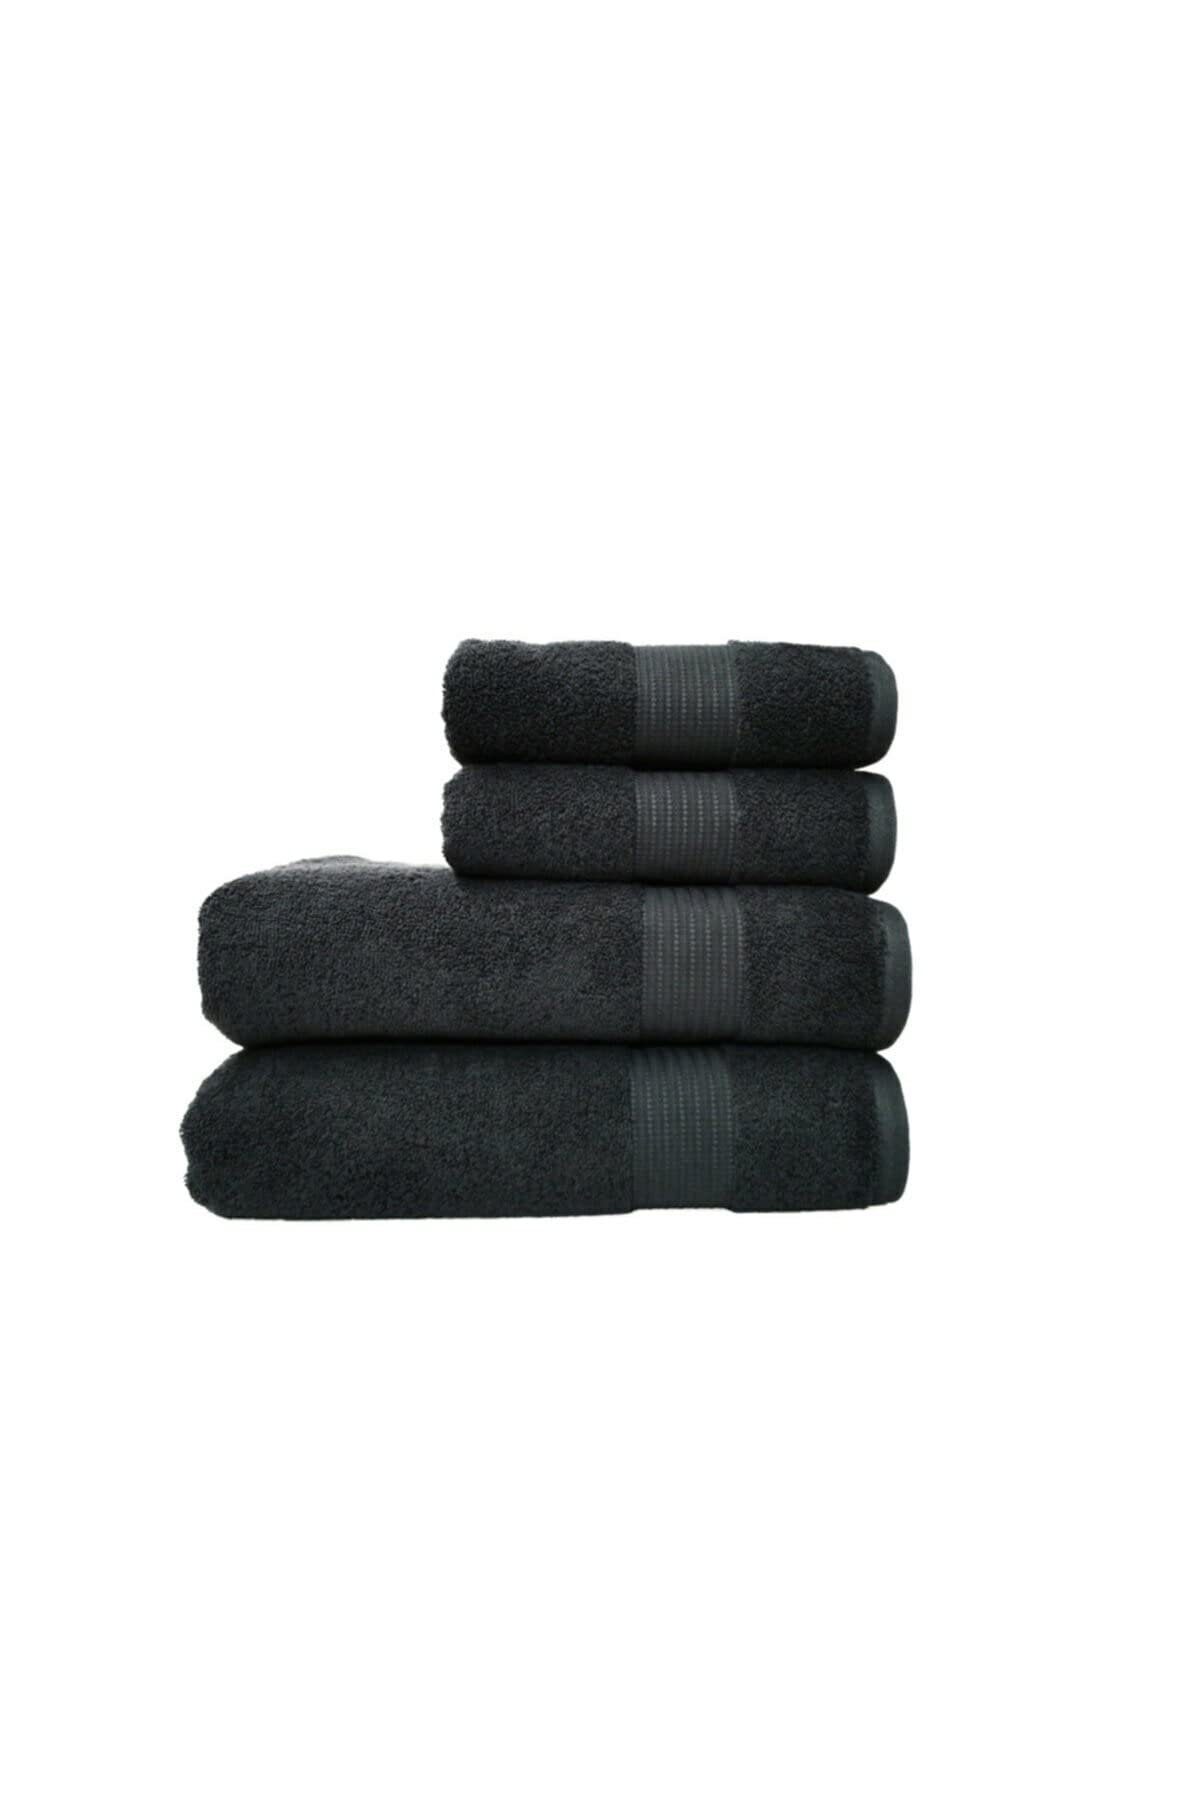 Handtuchset, schwarz Stück, 4 Handtuch Furni24 Set